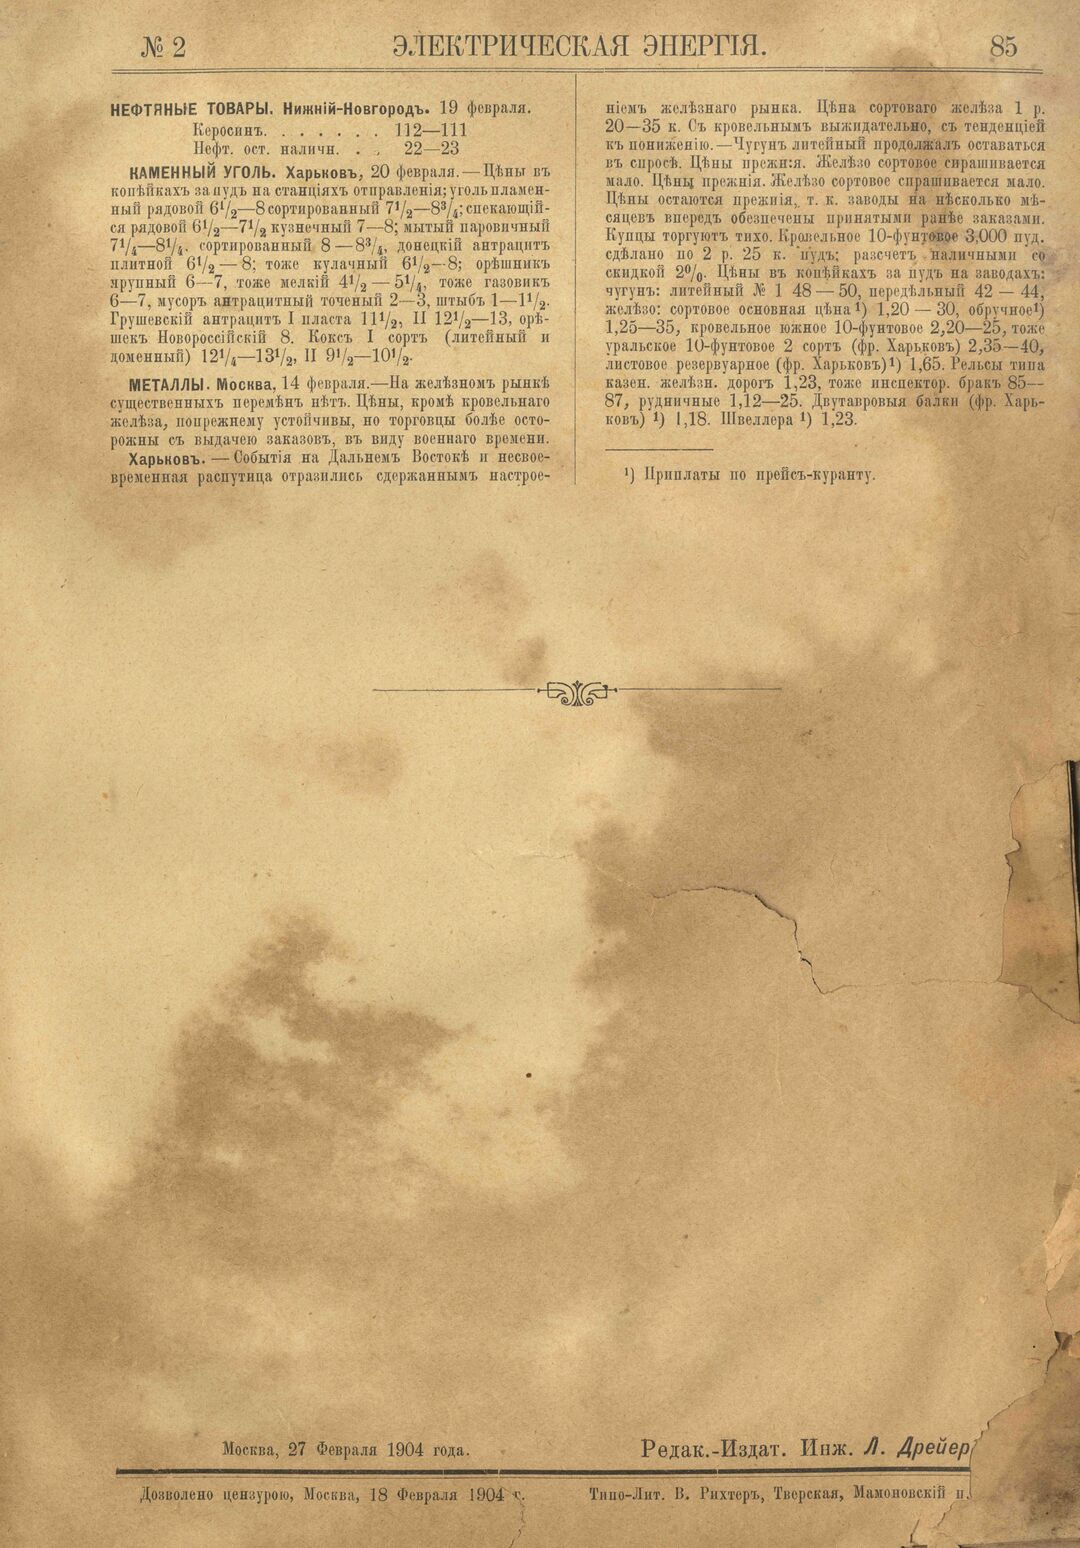 Рис. 1. Журнал Электрическая Энергiя, 2 номер, февраль, 1904 года, страница 85